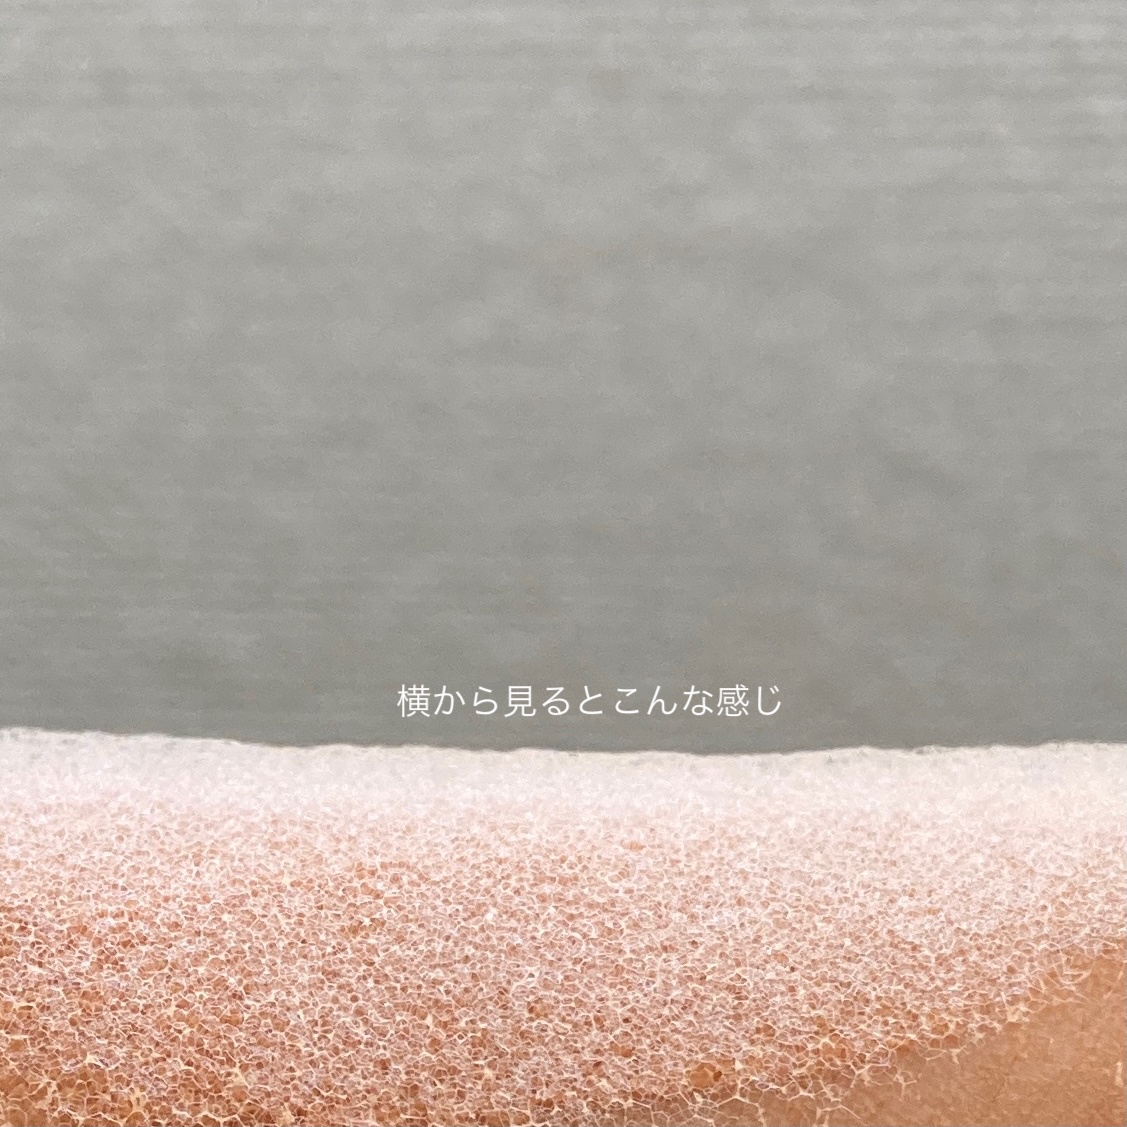 SUNDUK(サンダック) JEJU キャロットバブルパックの良い点・メリットに関するみゆさんの口コミ画像3